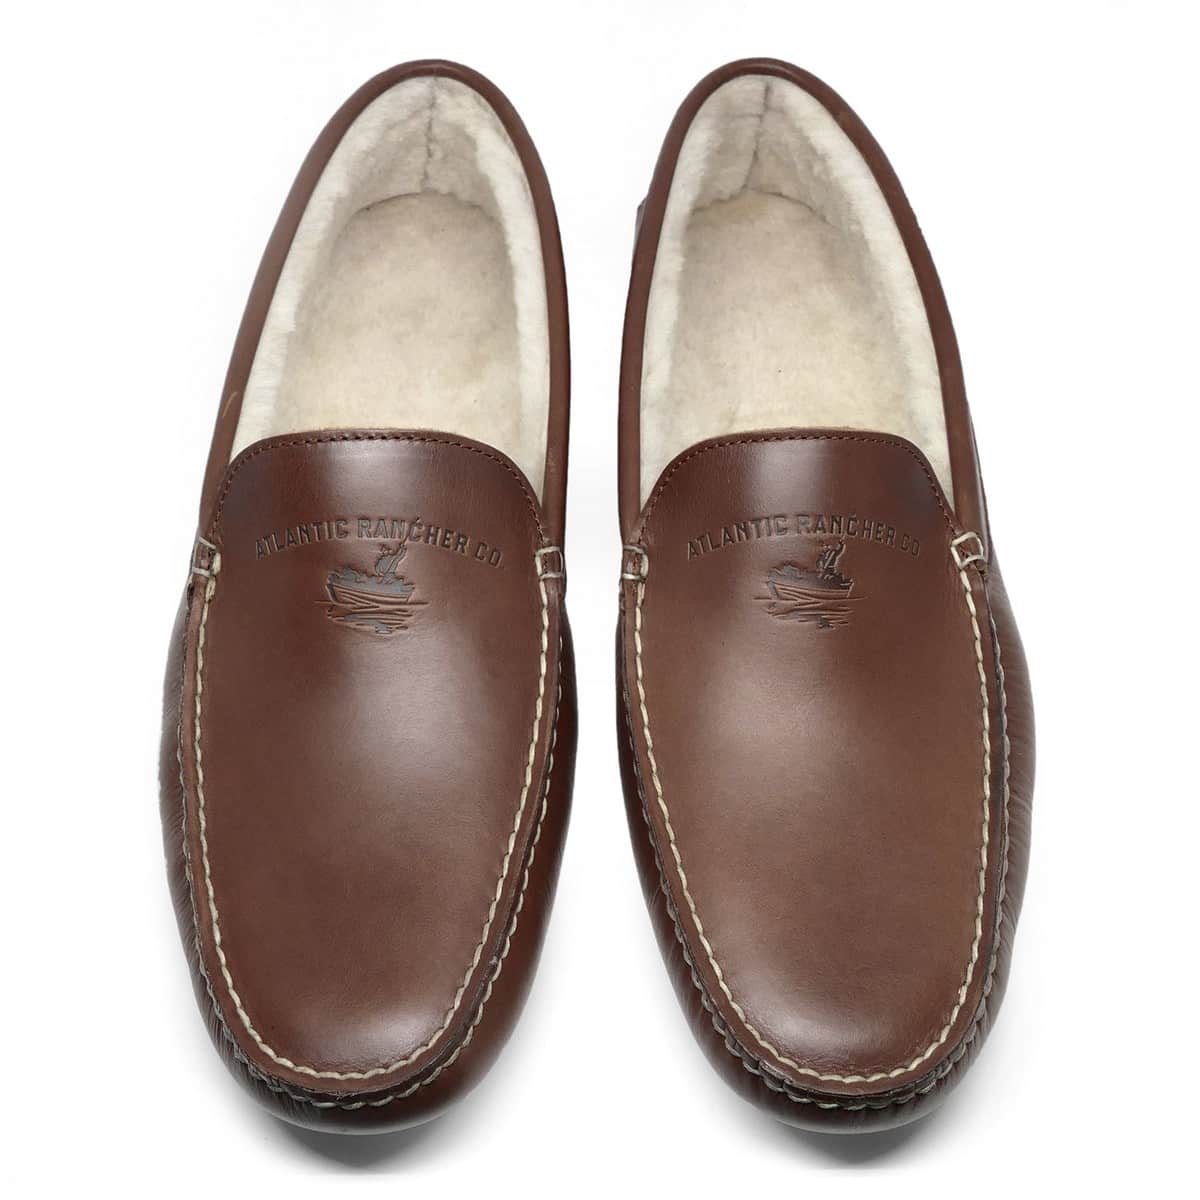 Malibu Moccasin Men's Loafer Shoes